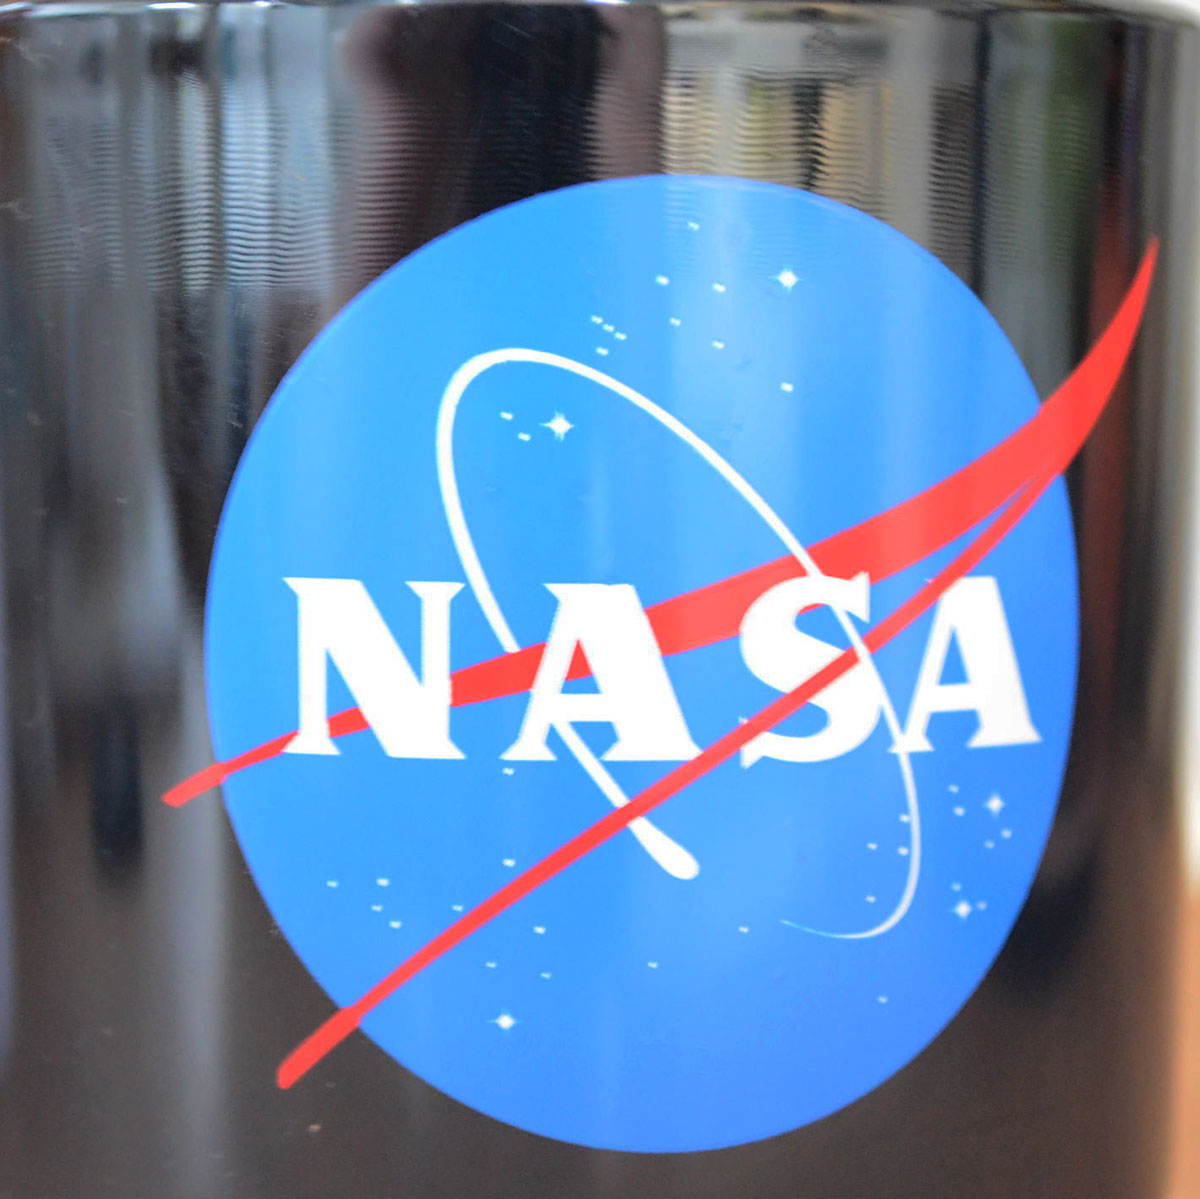 画像3: マグカップ スタッキングマグ NASA ナサ ブラック STACKING MUG NASA